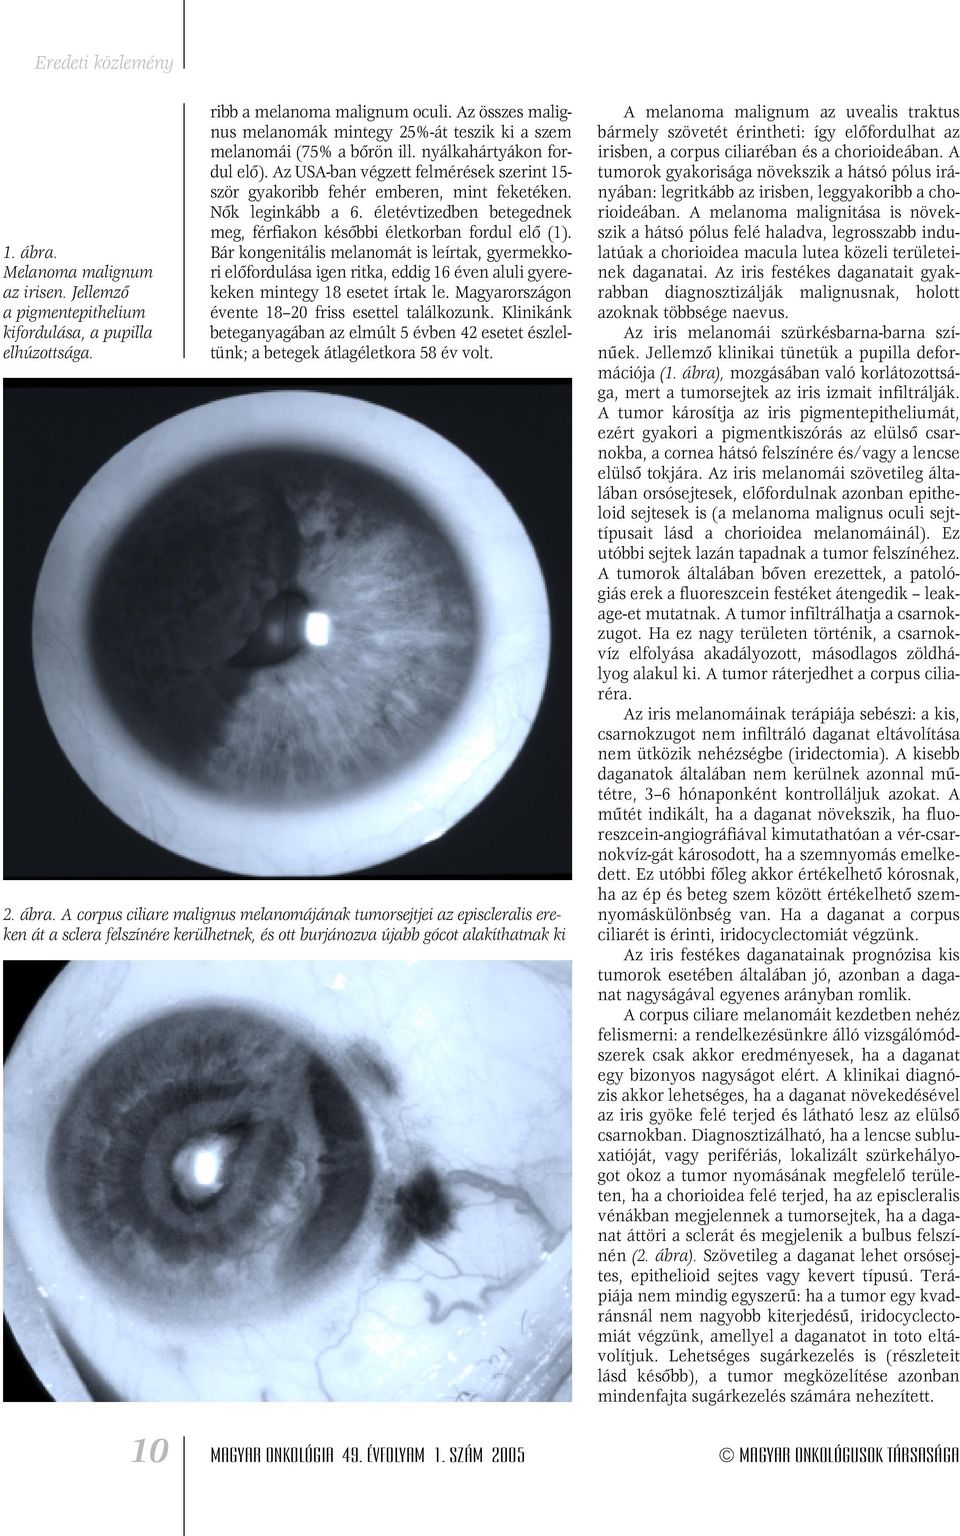 A szem melanoma: az íriszen és a retinán, a csilló testen